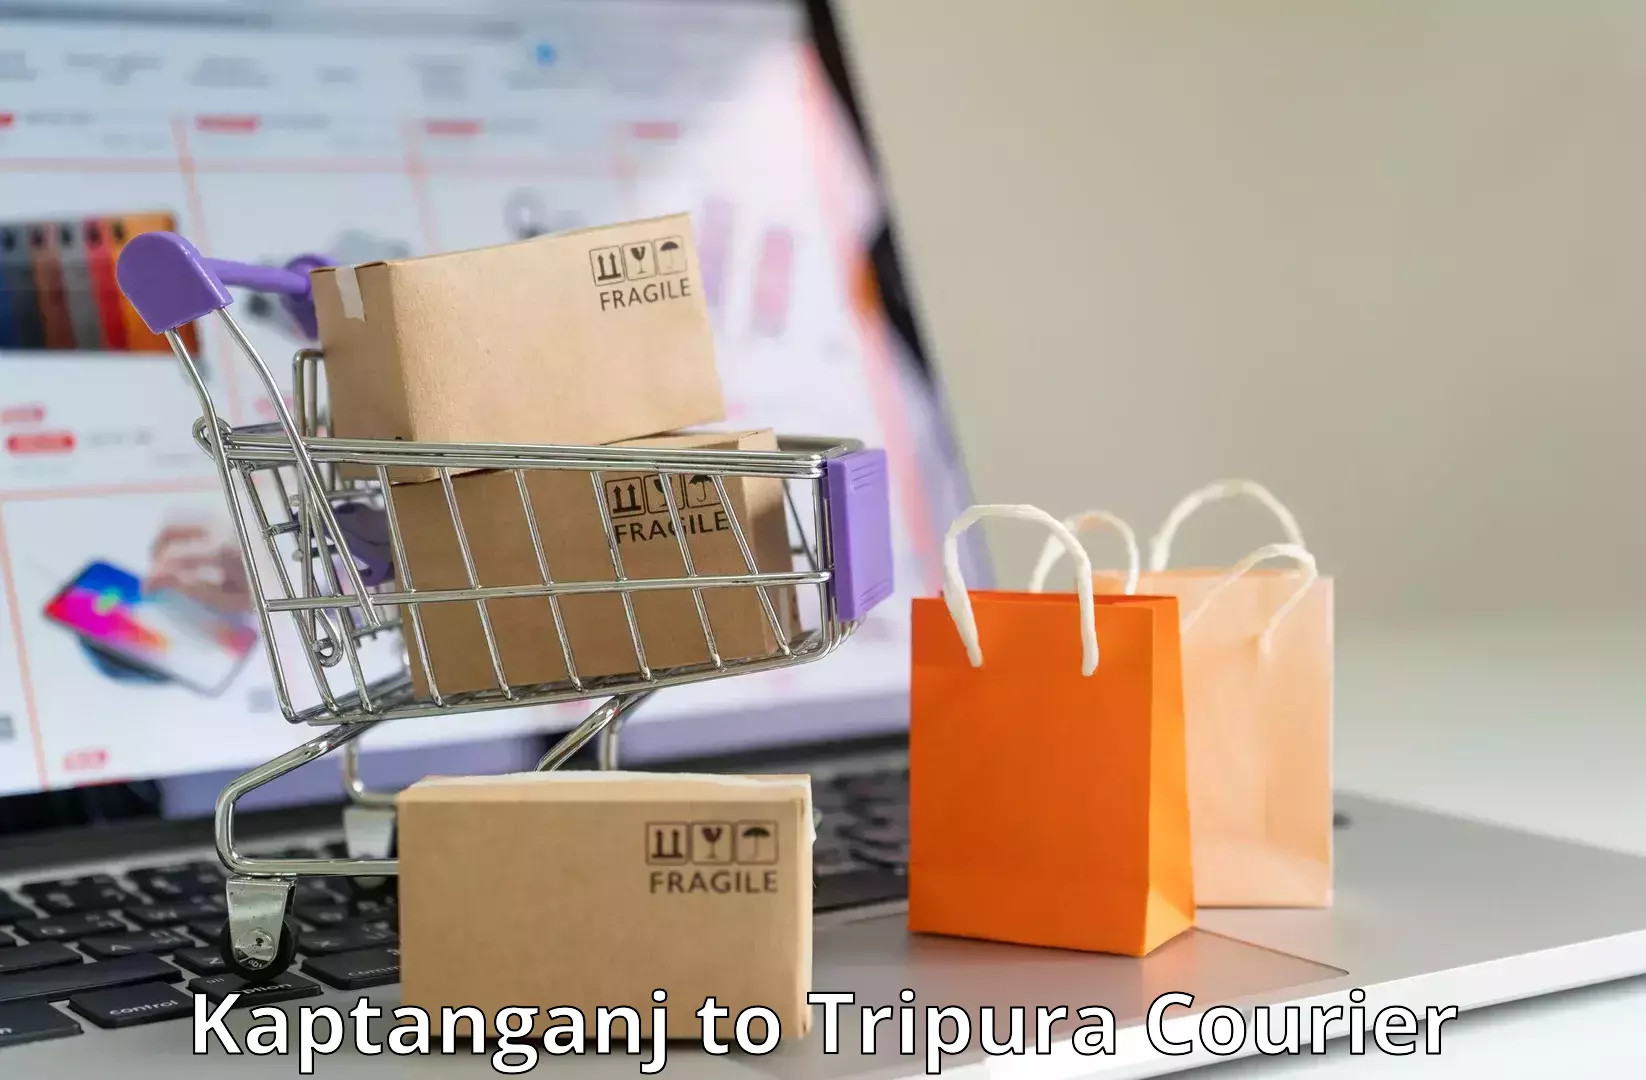 Premium courier services Kaptanganj to Agartala